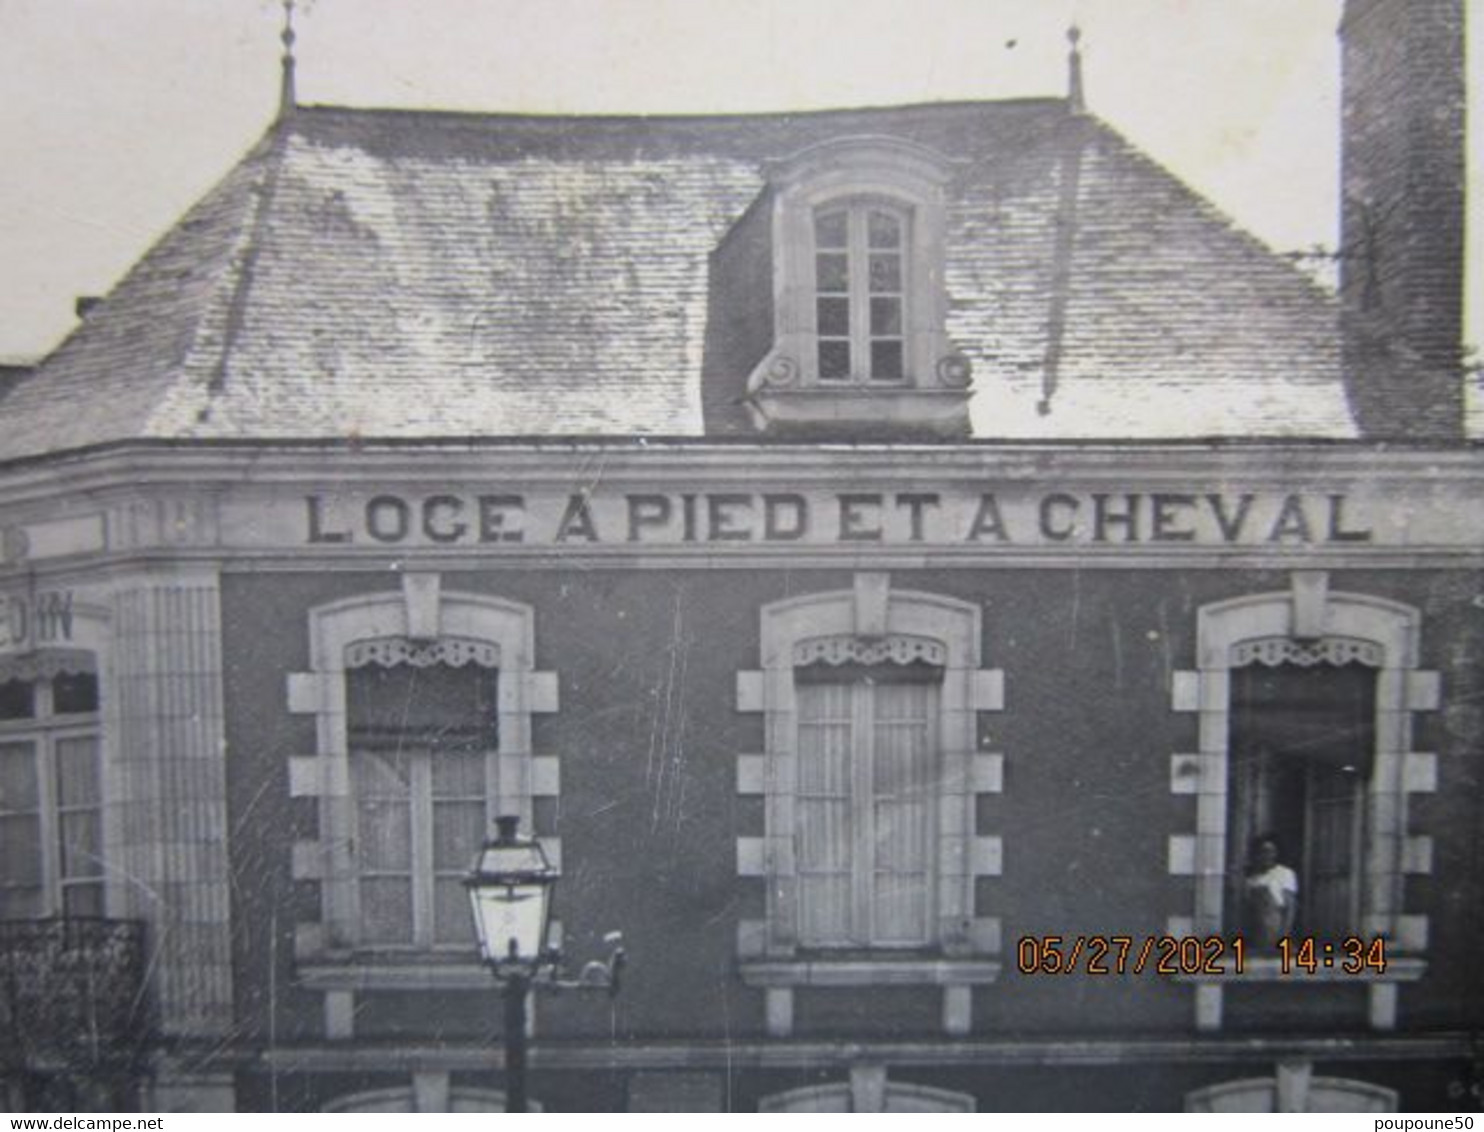 CP 53 Mayenne SAINT DENIS D'ANJOU  Prés Crez En Bouere Route D'Angers Hôtel " Loge à Pied Et à Cheval " Garage Renault - Crez En Bouere